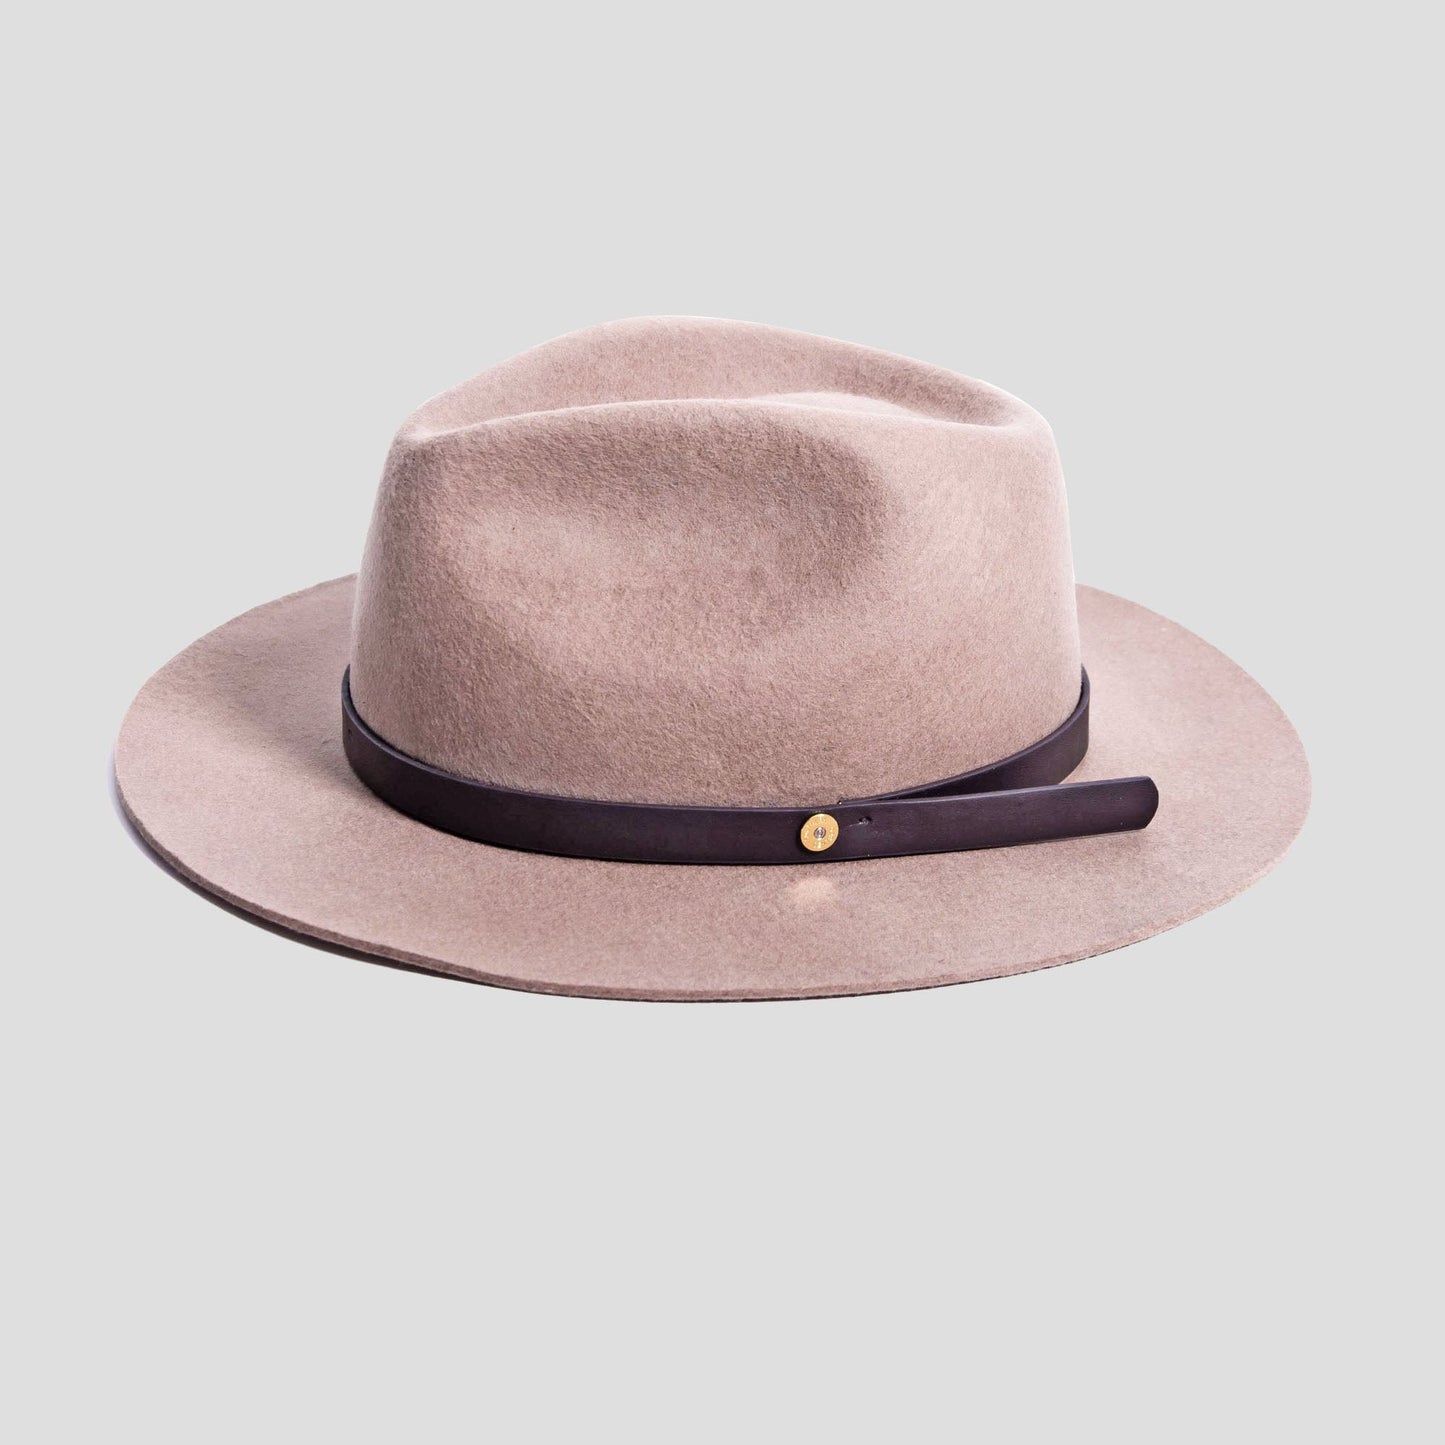 High-end men's formal hat 008